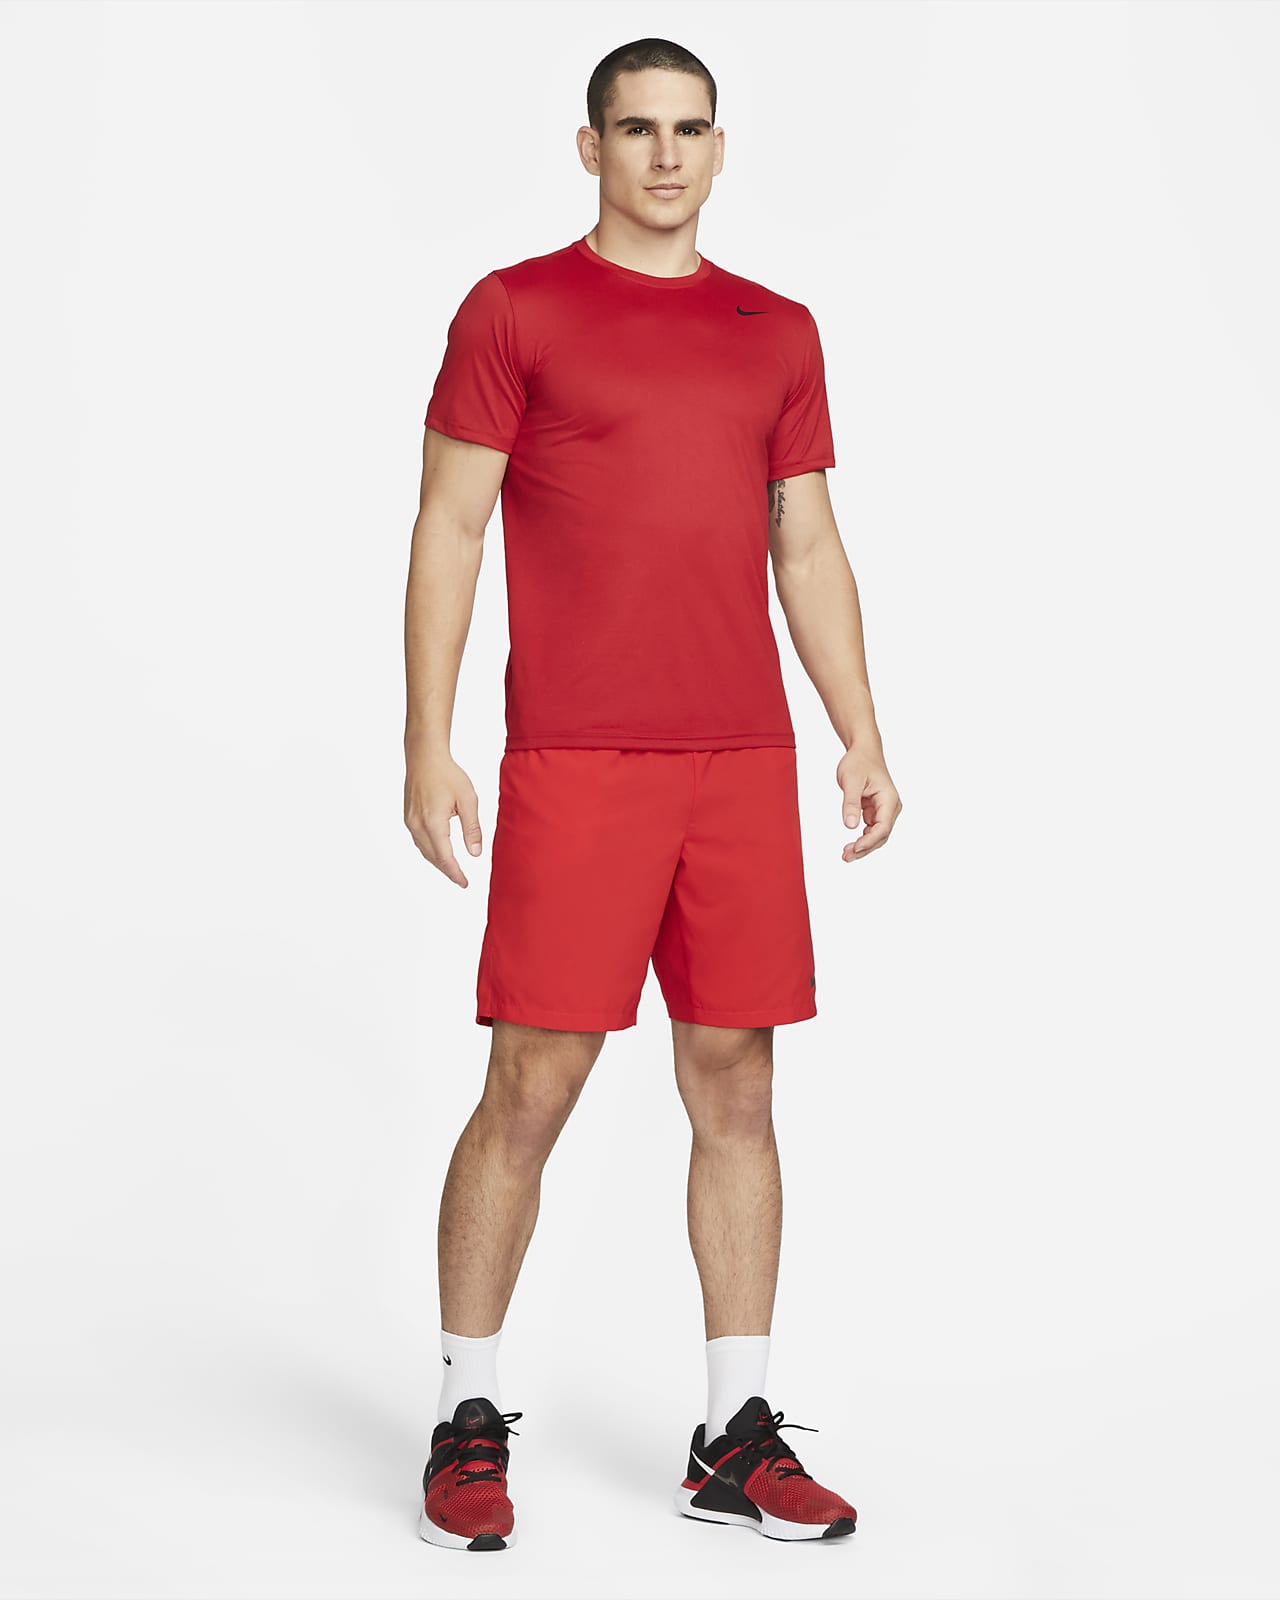 Nike Flex Men's Woven Shorts. Nike.com